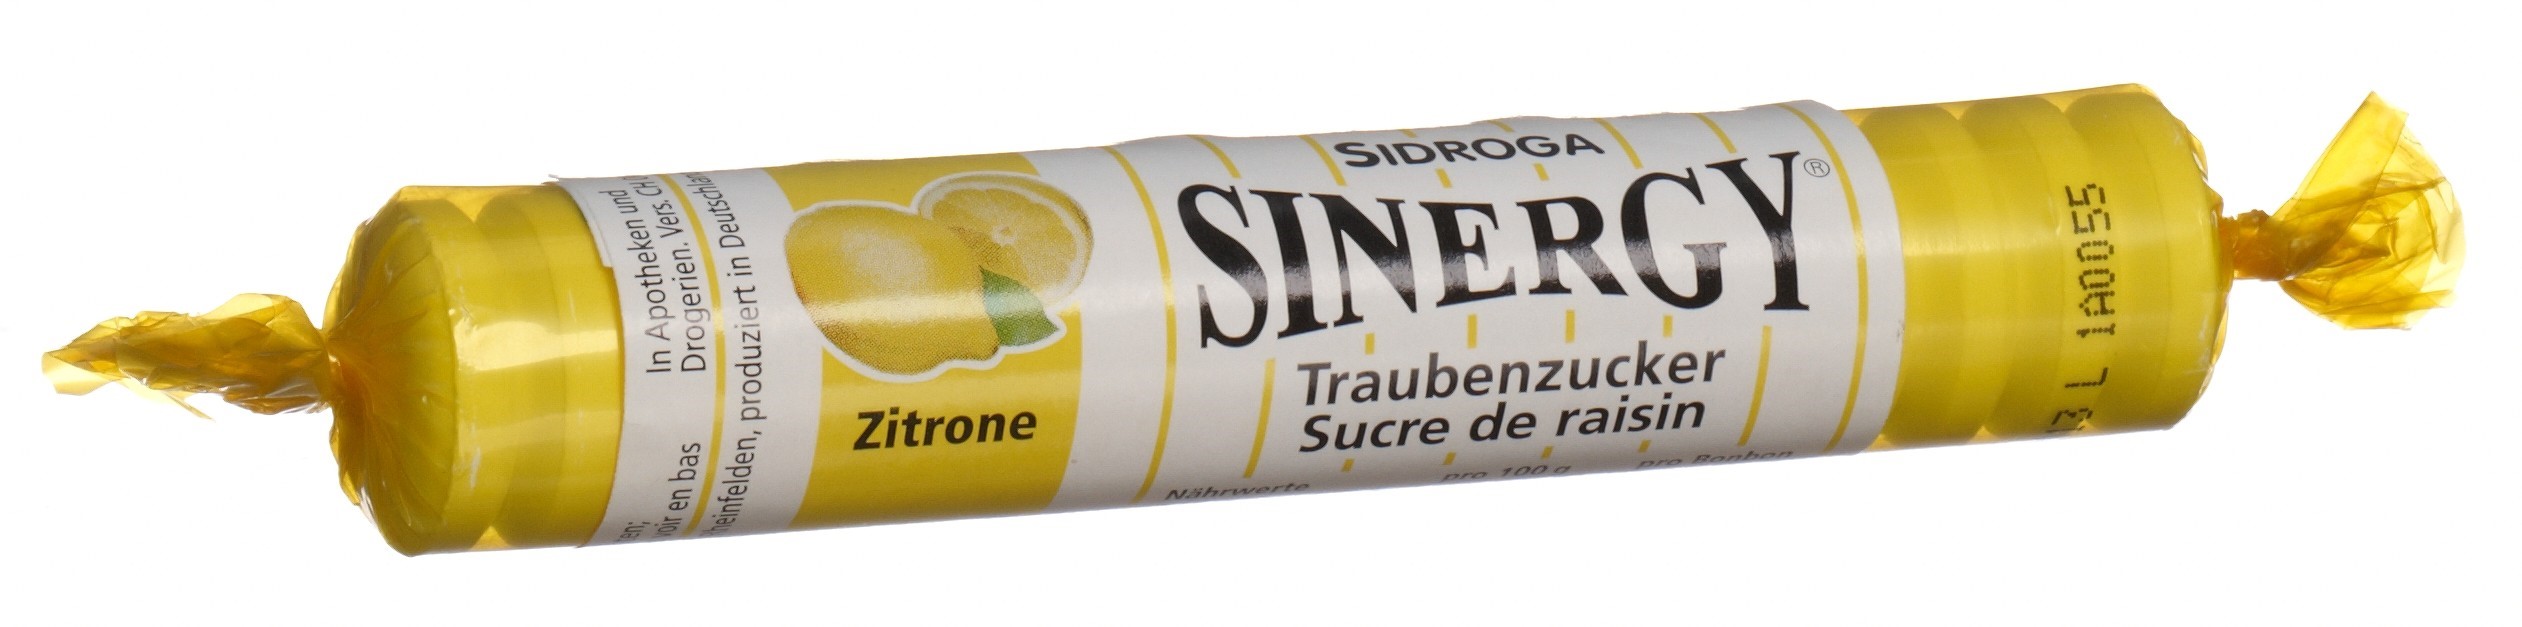 SINERGY Traubenzucker Zitrone Rolle 40 g